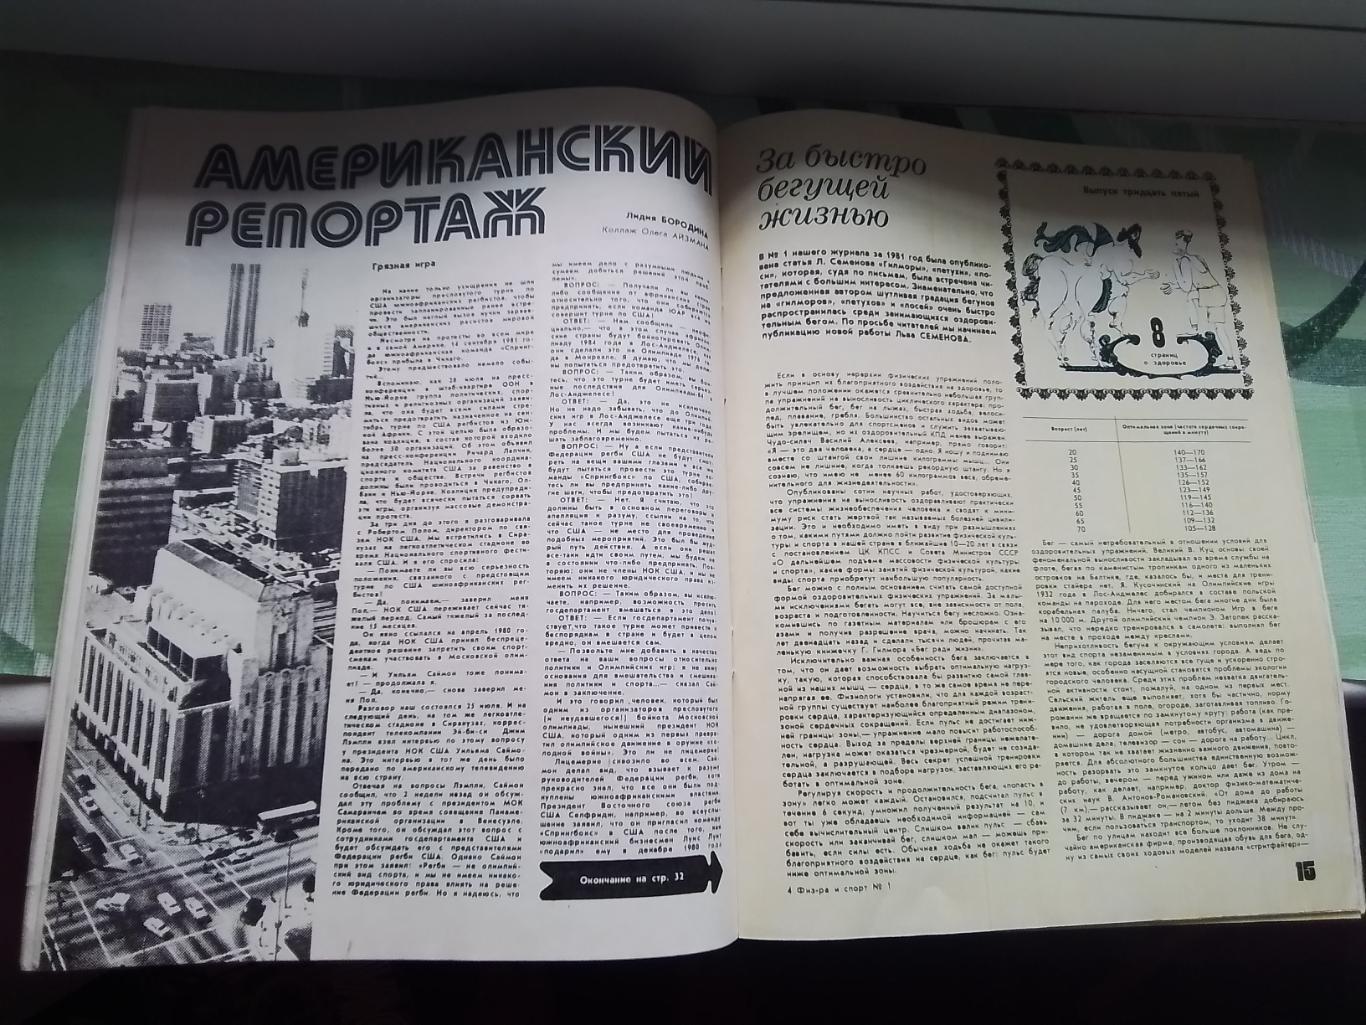 Журнал ФиС 1982 1 США готовится к ОИ-84 Д Кипиани Д Тбилиси С.Шепелев Спартак 3